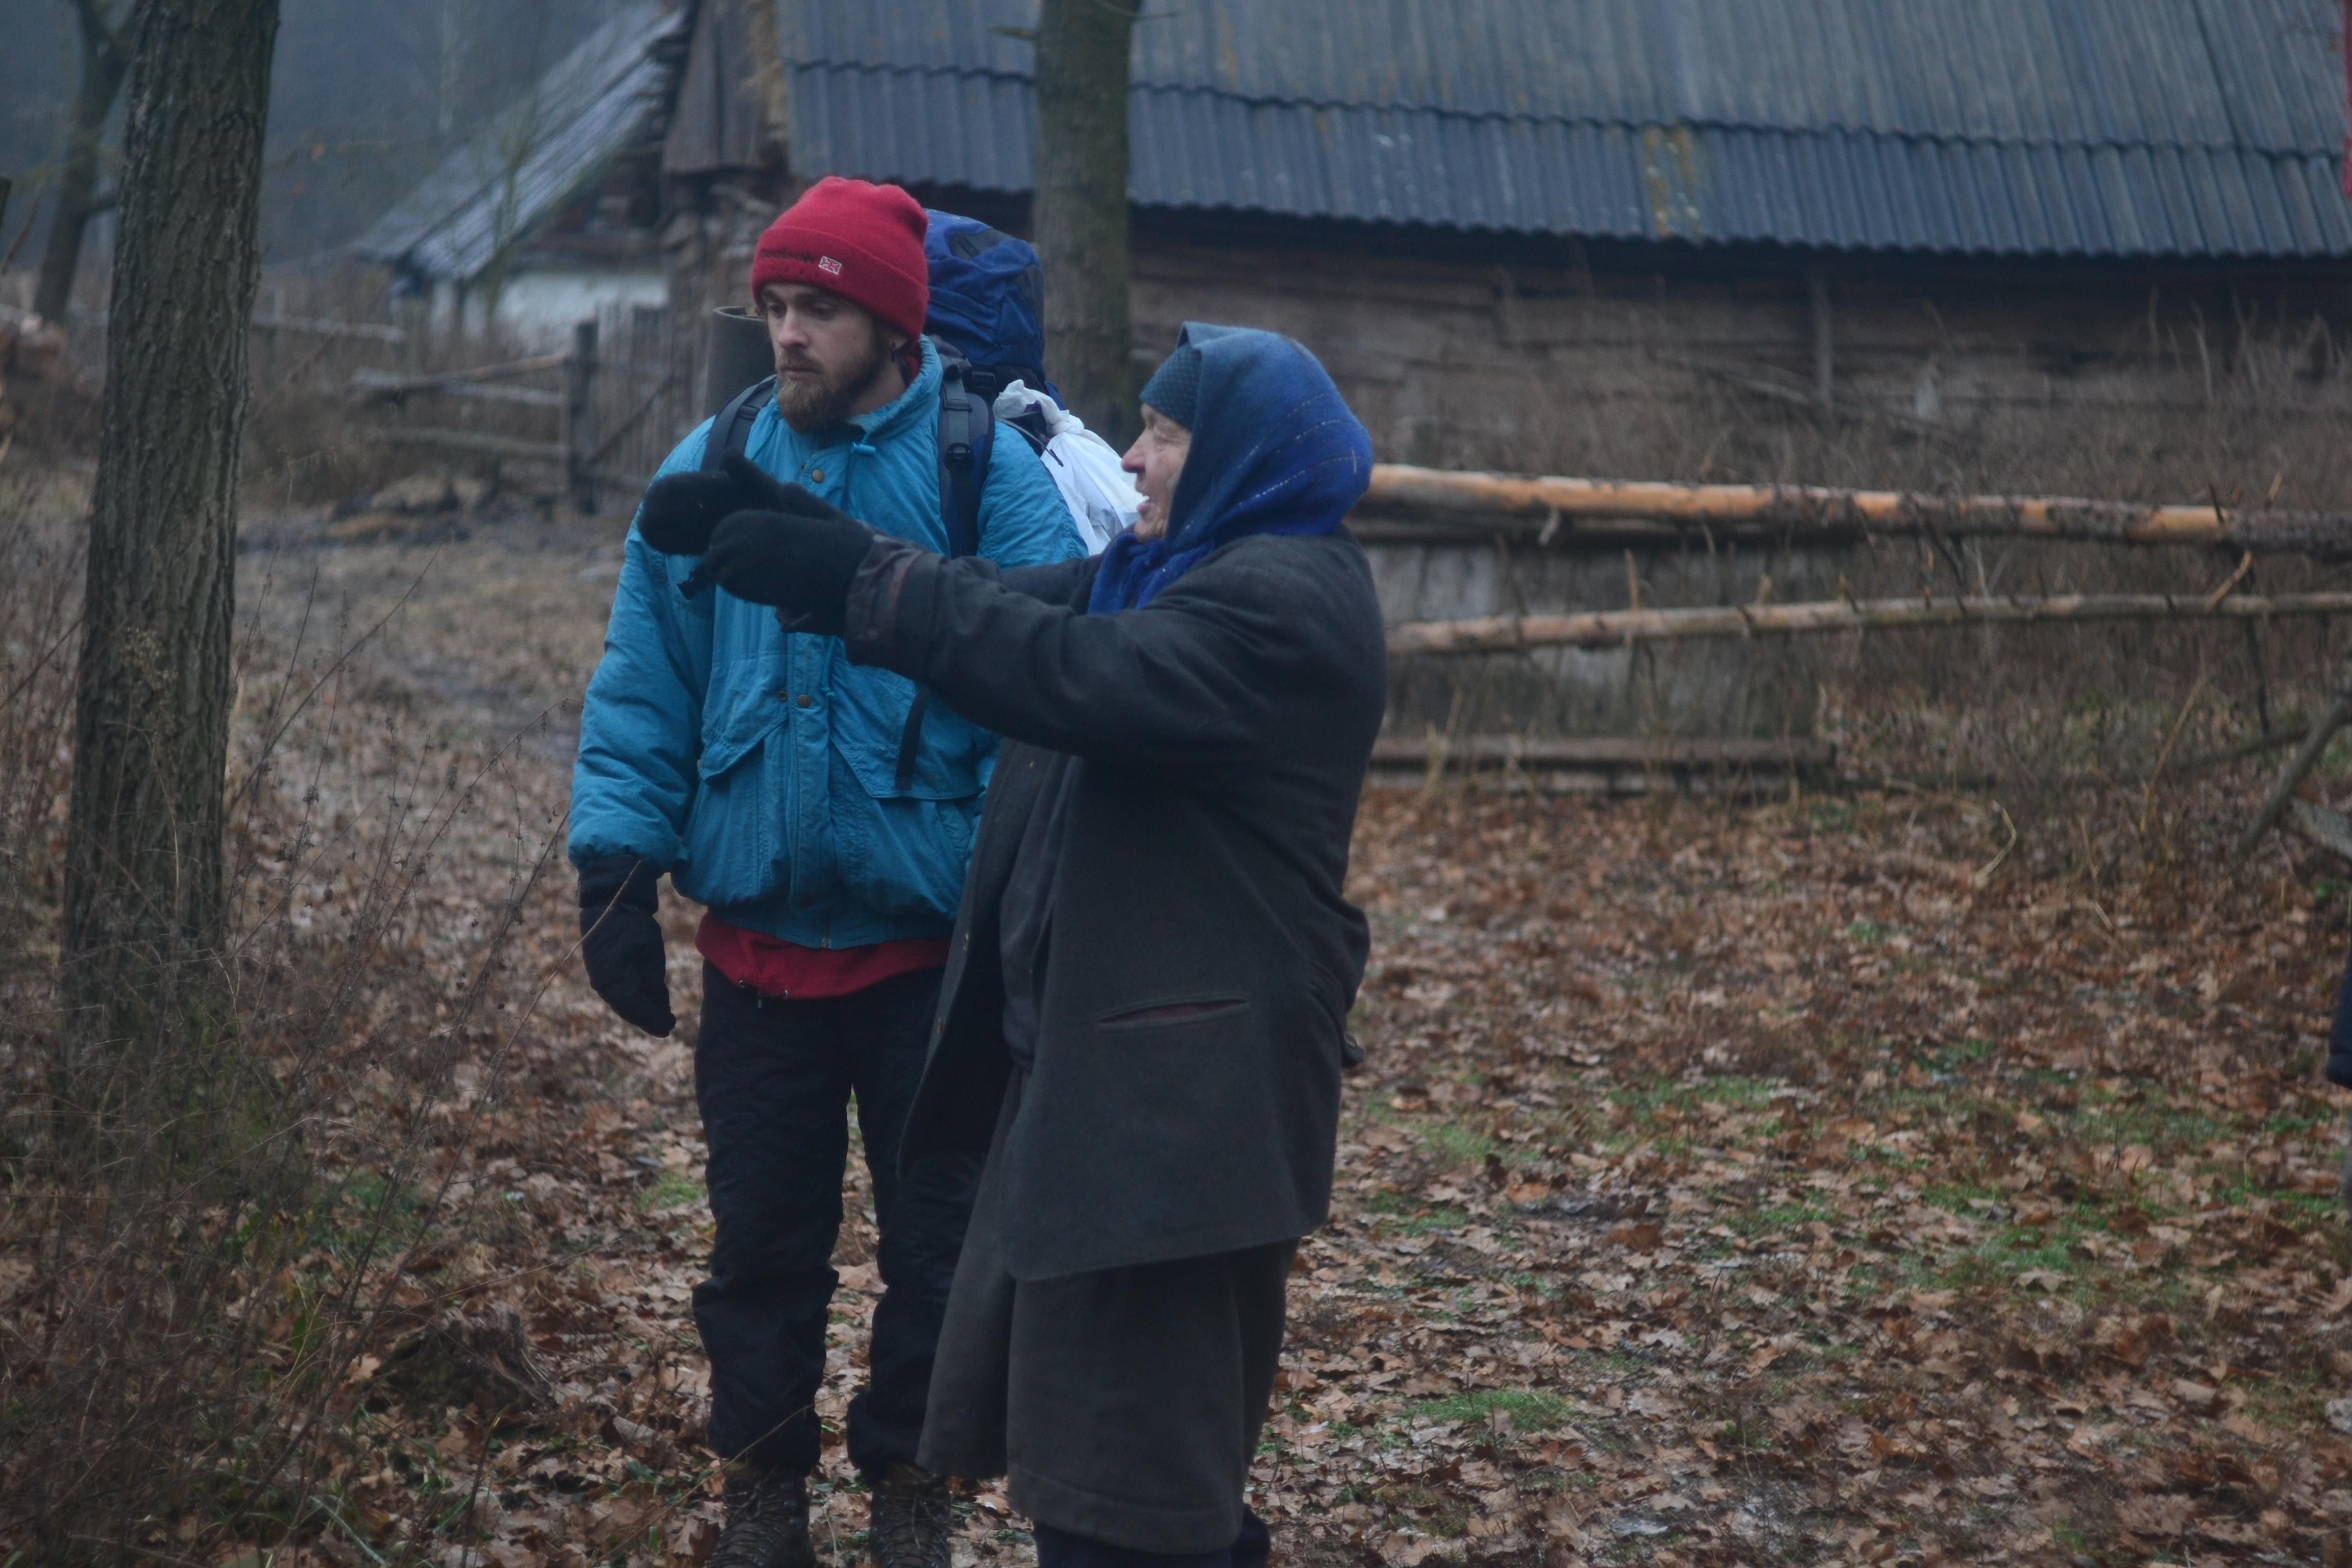 Села, которые вымирают: как проект "Хащі" путешествует по Украине в поисках уникальных мест